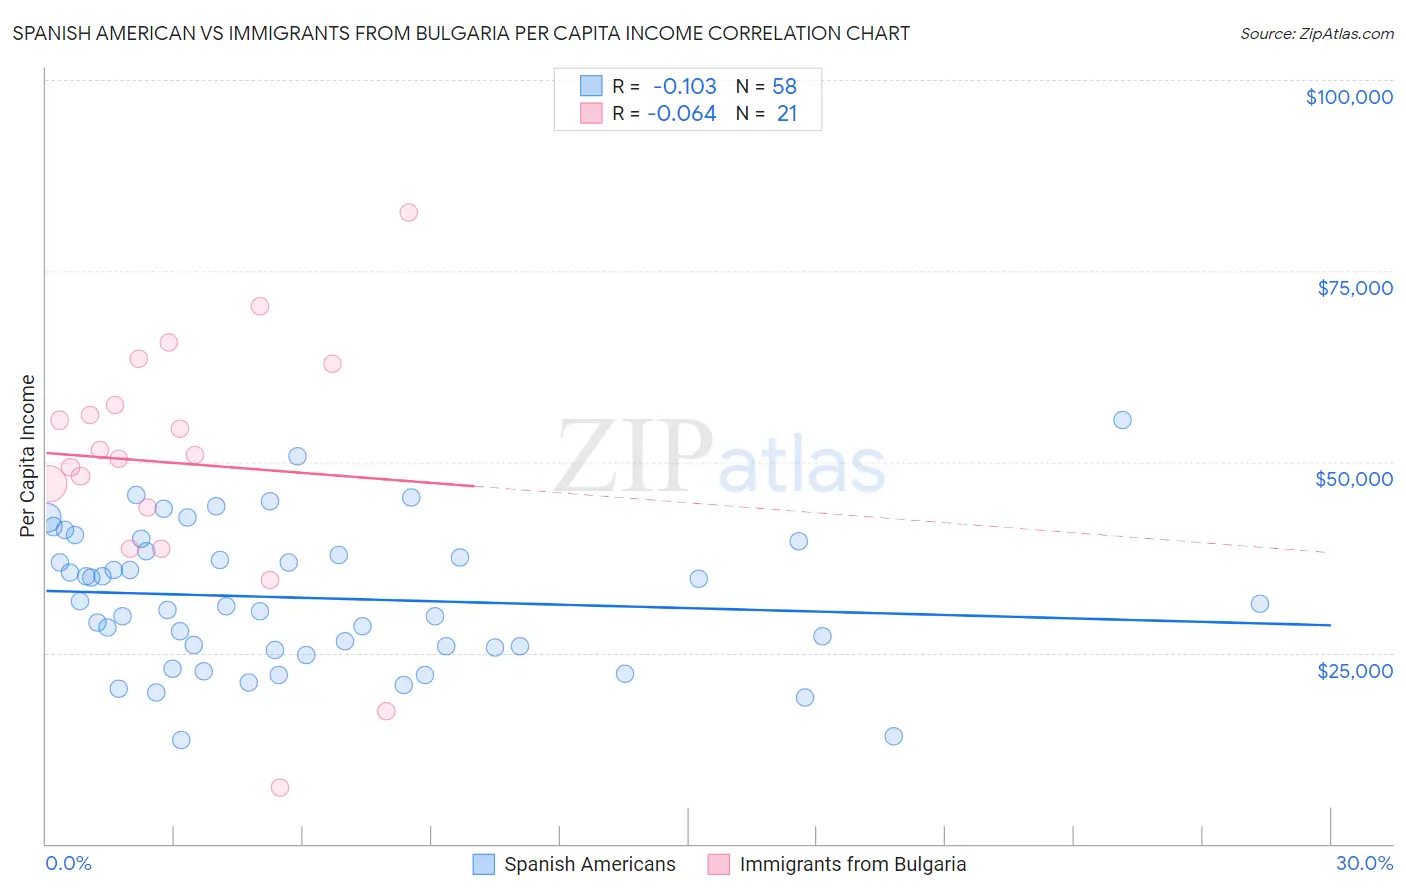 Spanish American vs Immigrants from Bulgaria Per Capita Income